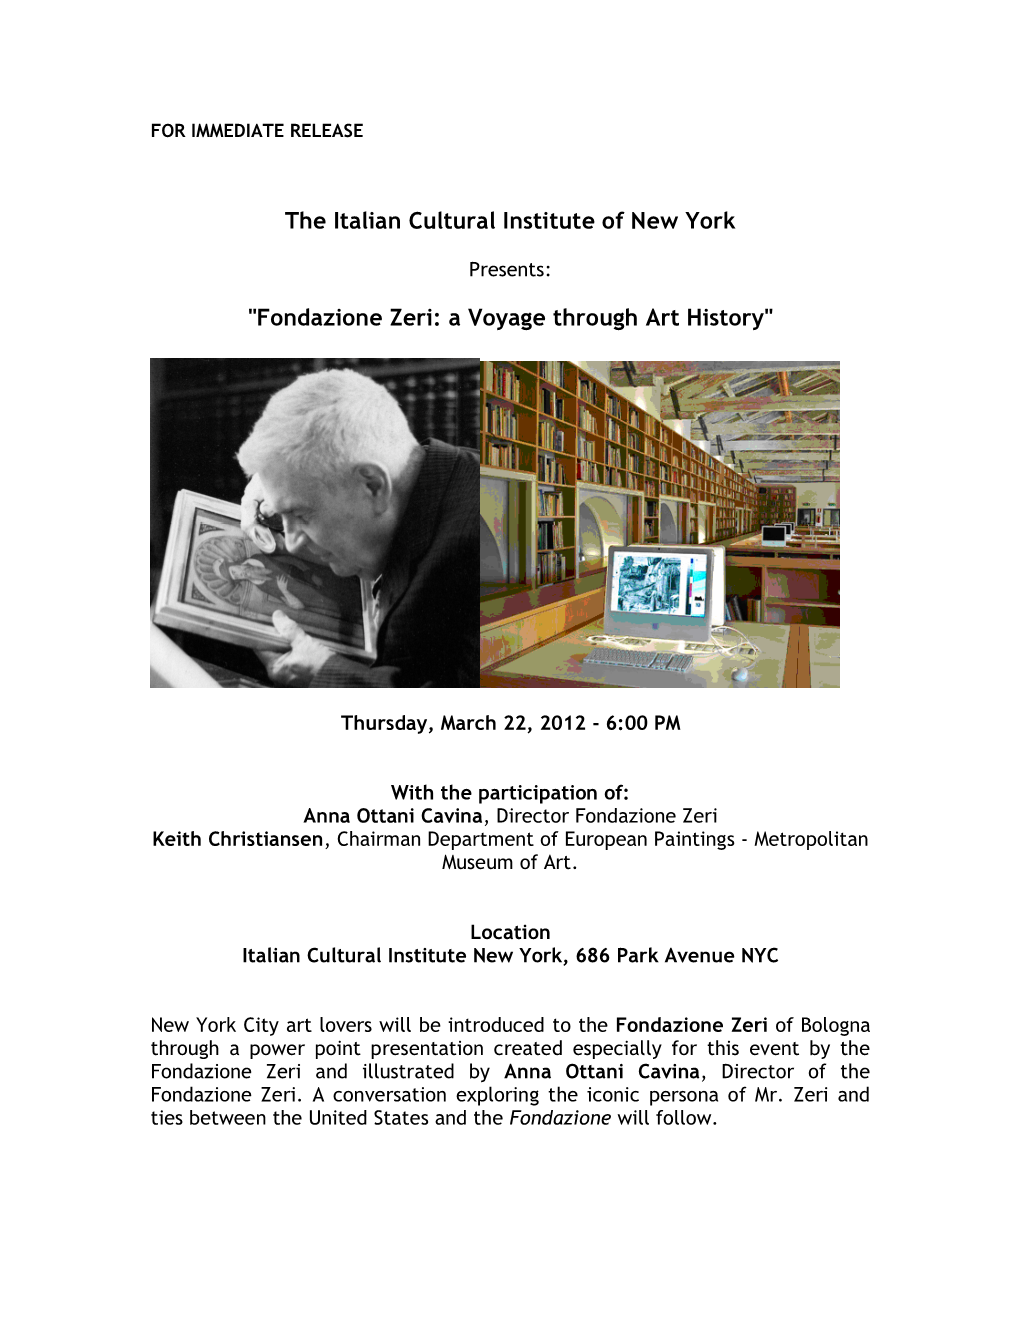 The Italian Cultural Institute of New York "Fondazione Zeri: a Voyage